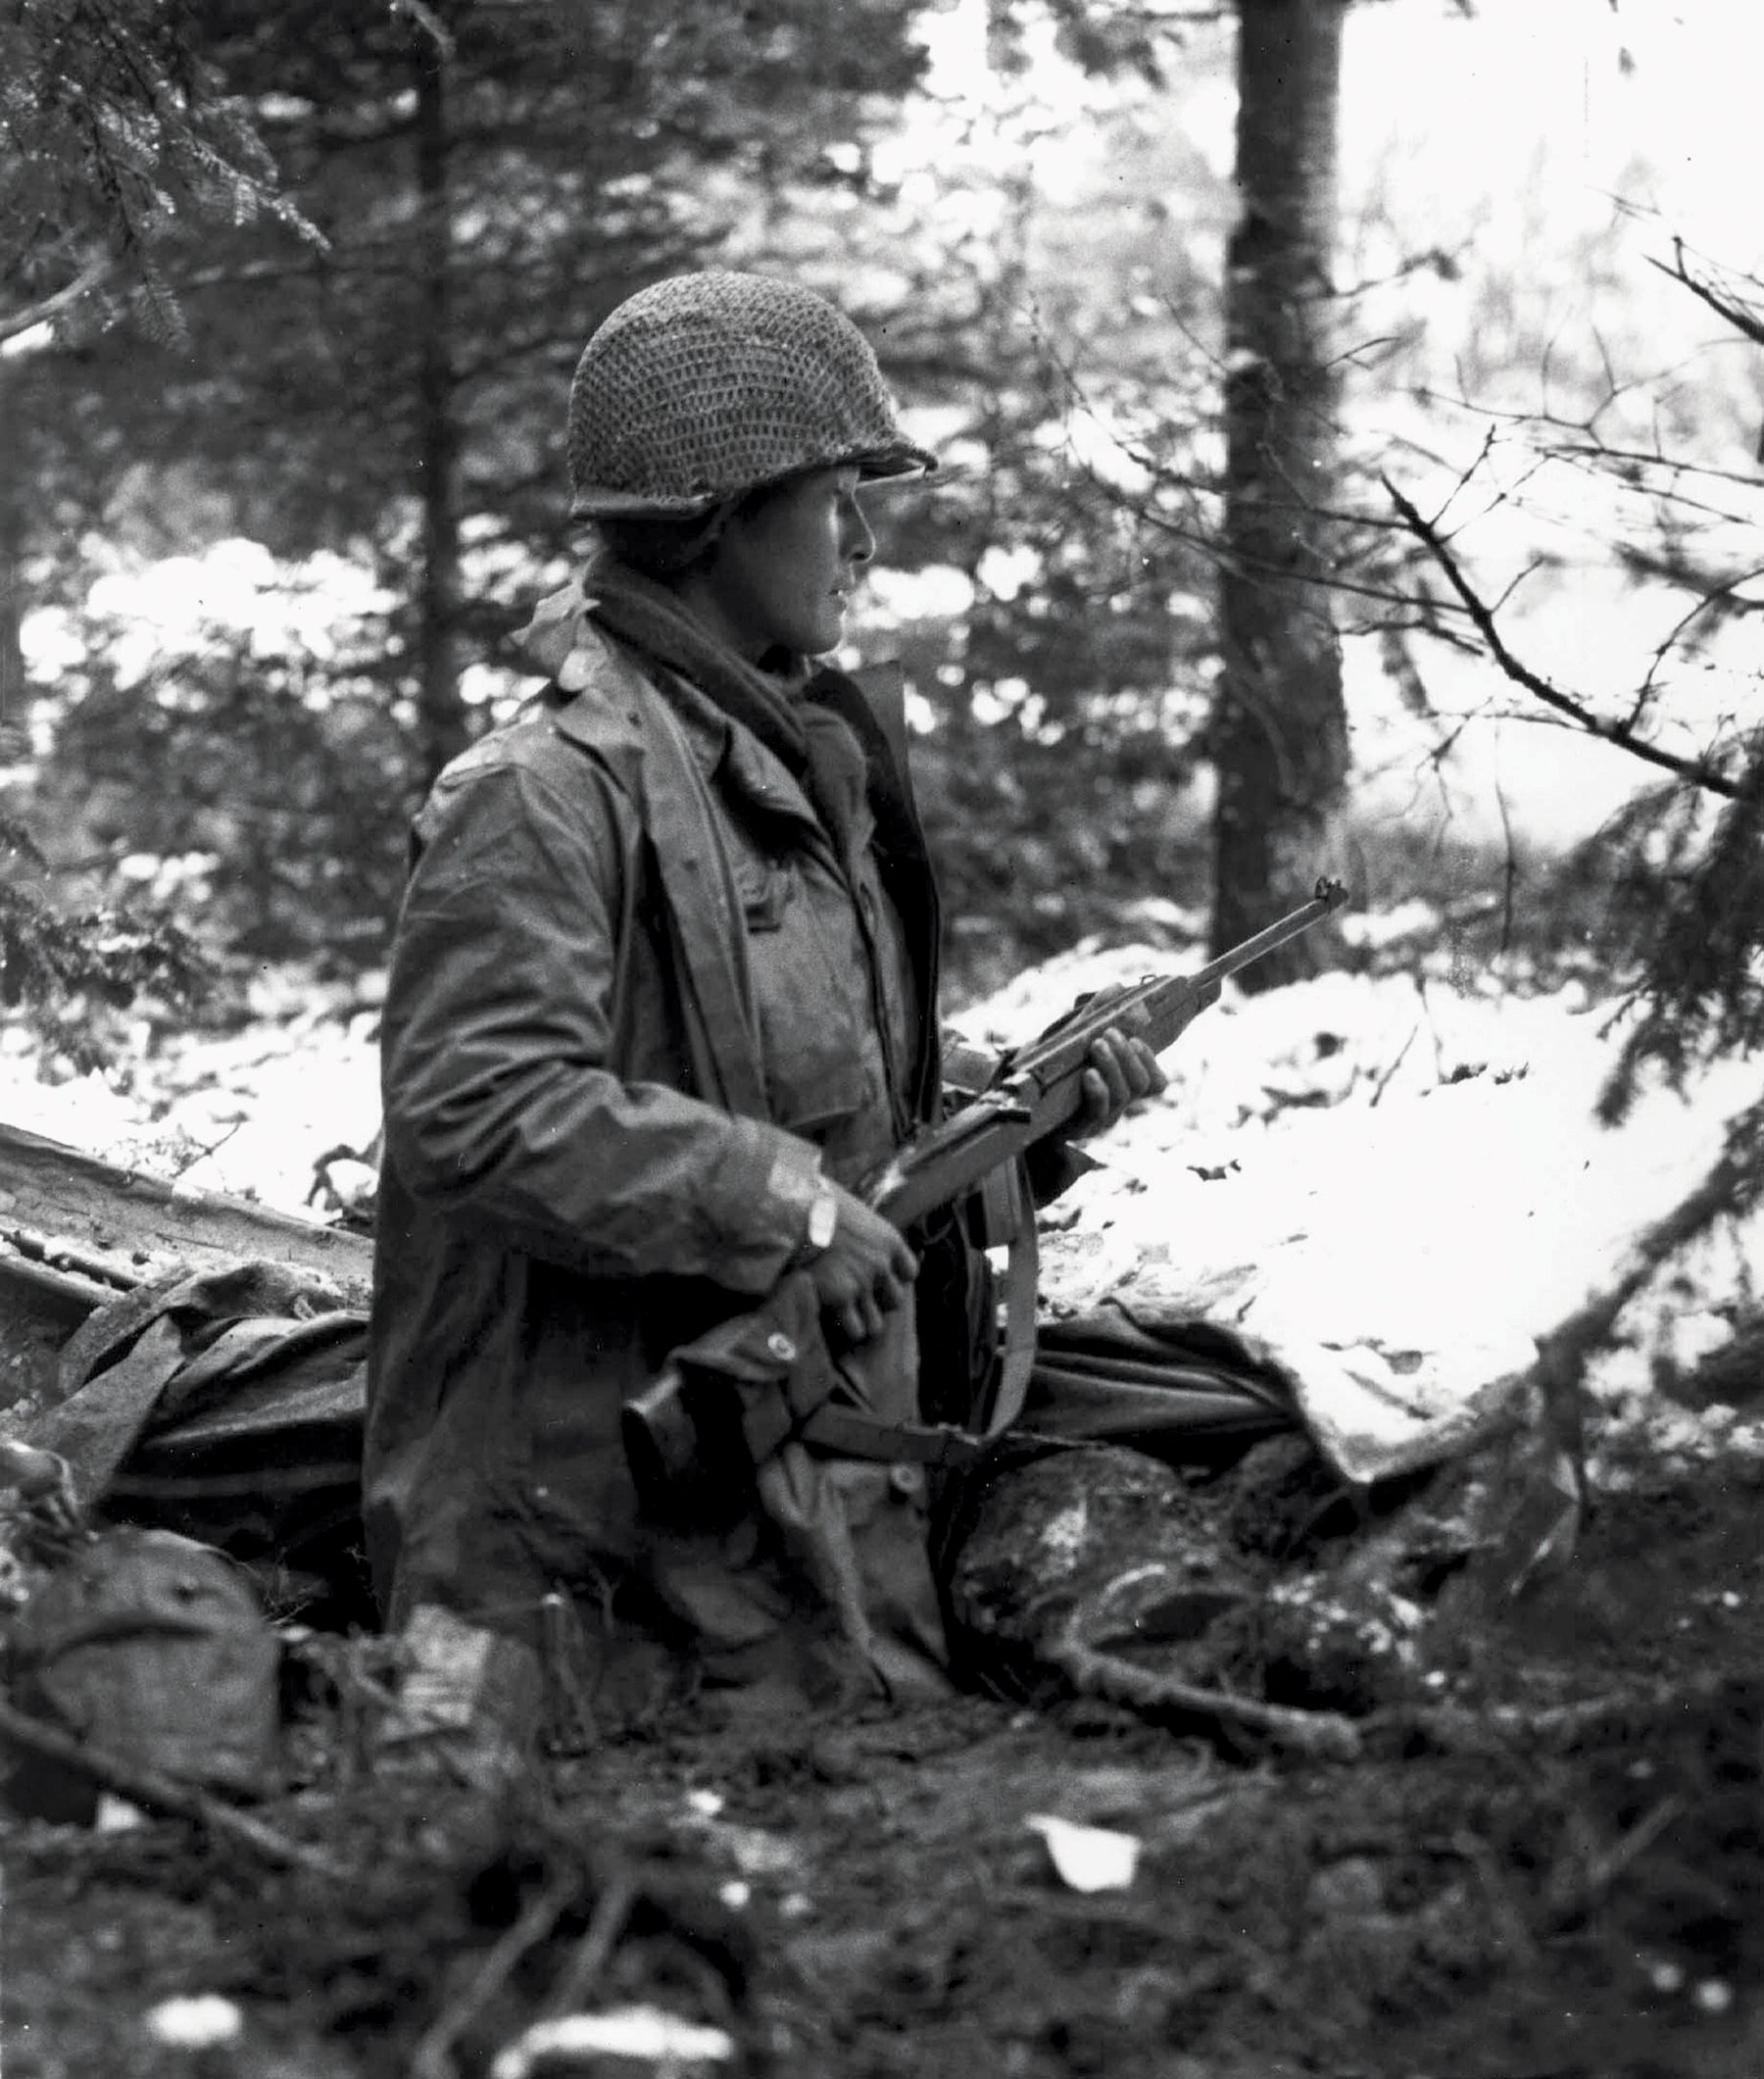 Sgt. Daniel Inouye in France in November 1944. (Credit: Wikipedia)